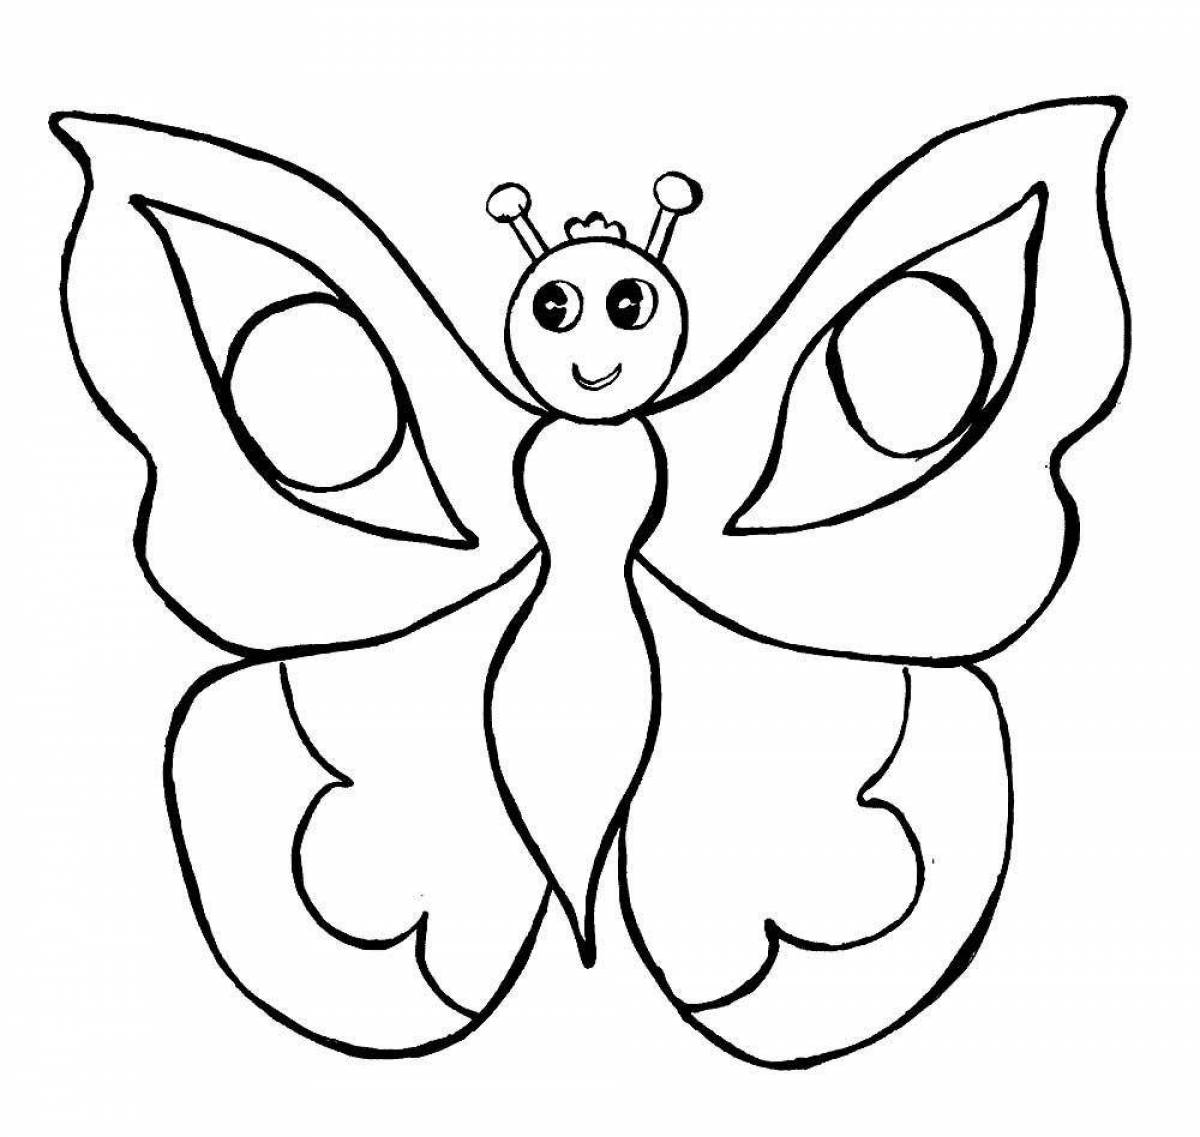 Буйный рисунок бабочки для детей